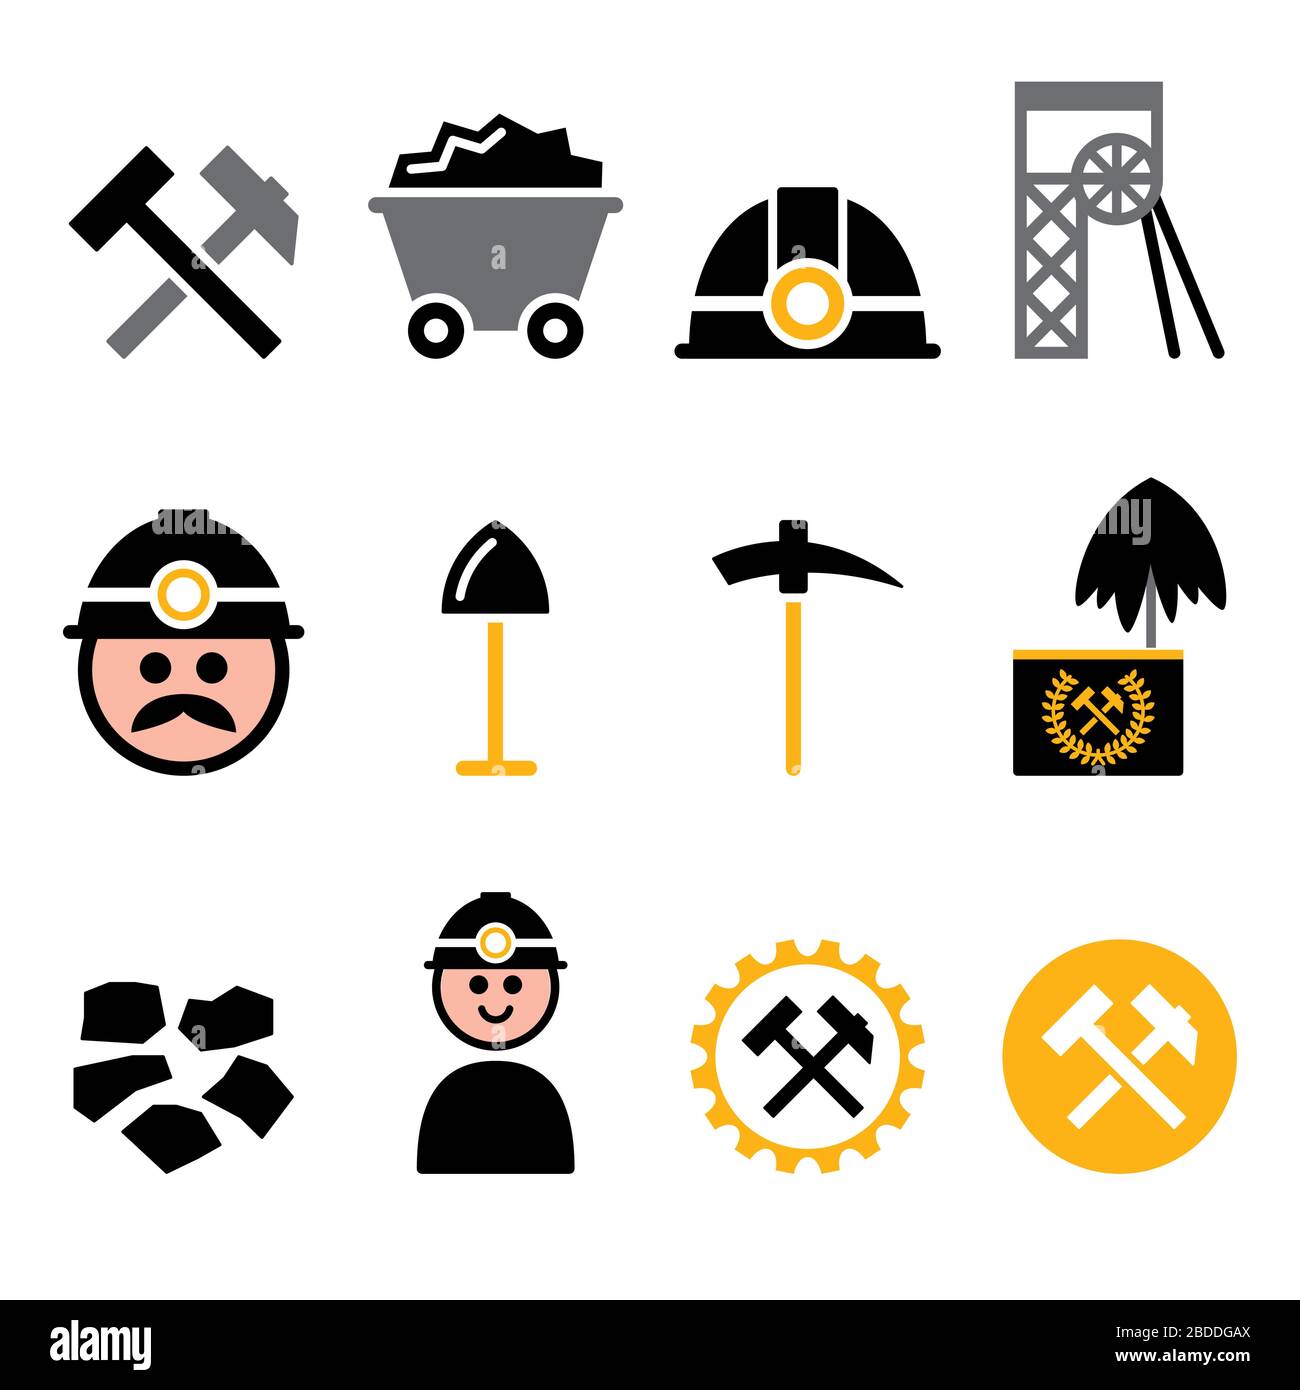 Miniera di carbone, set di icone vettoriali per minatori - industria mineraria, progettazione a colori per la produzione di carbone Illustrazione Vettoriale